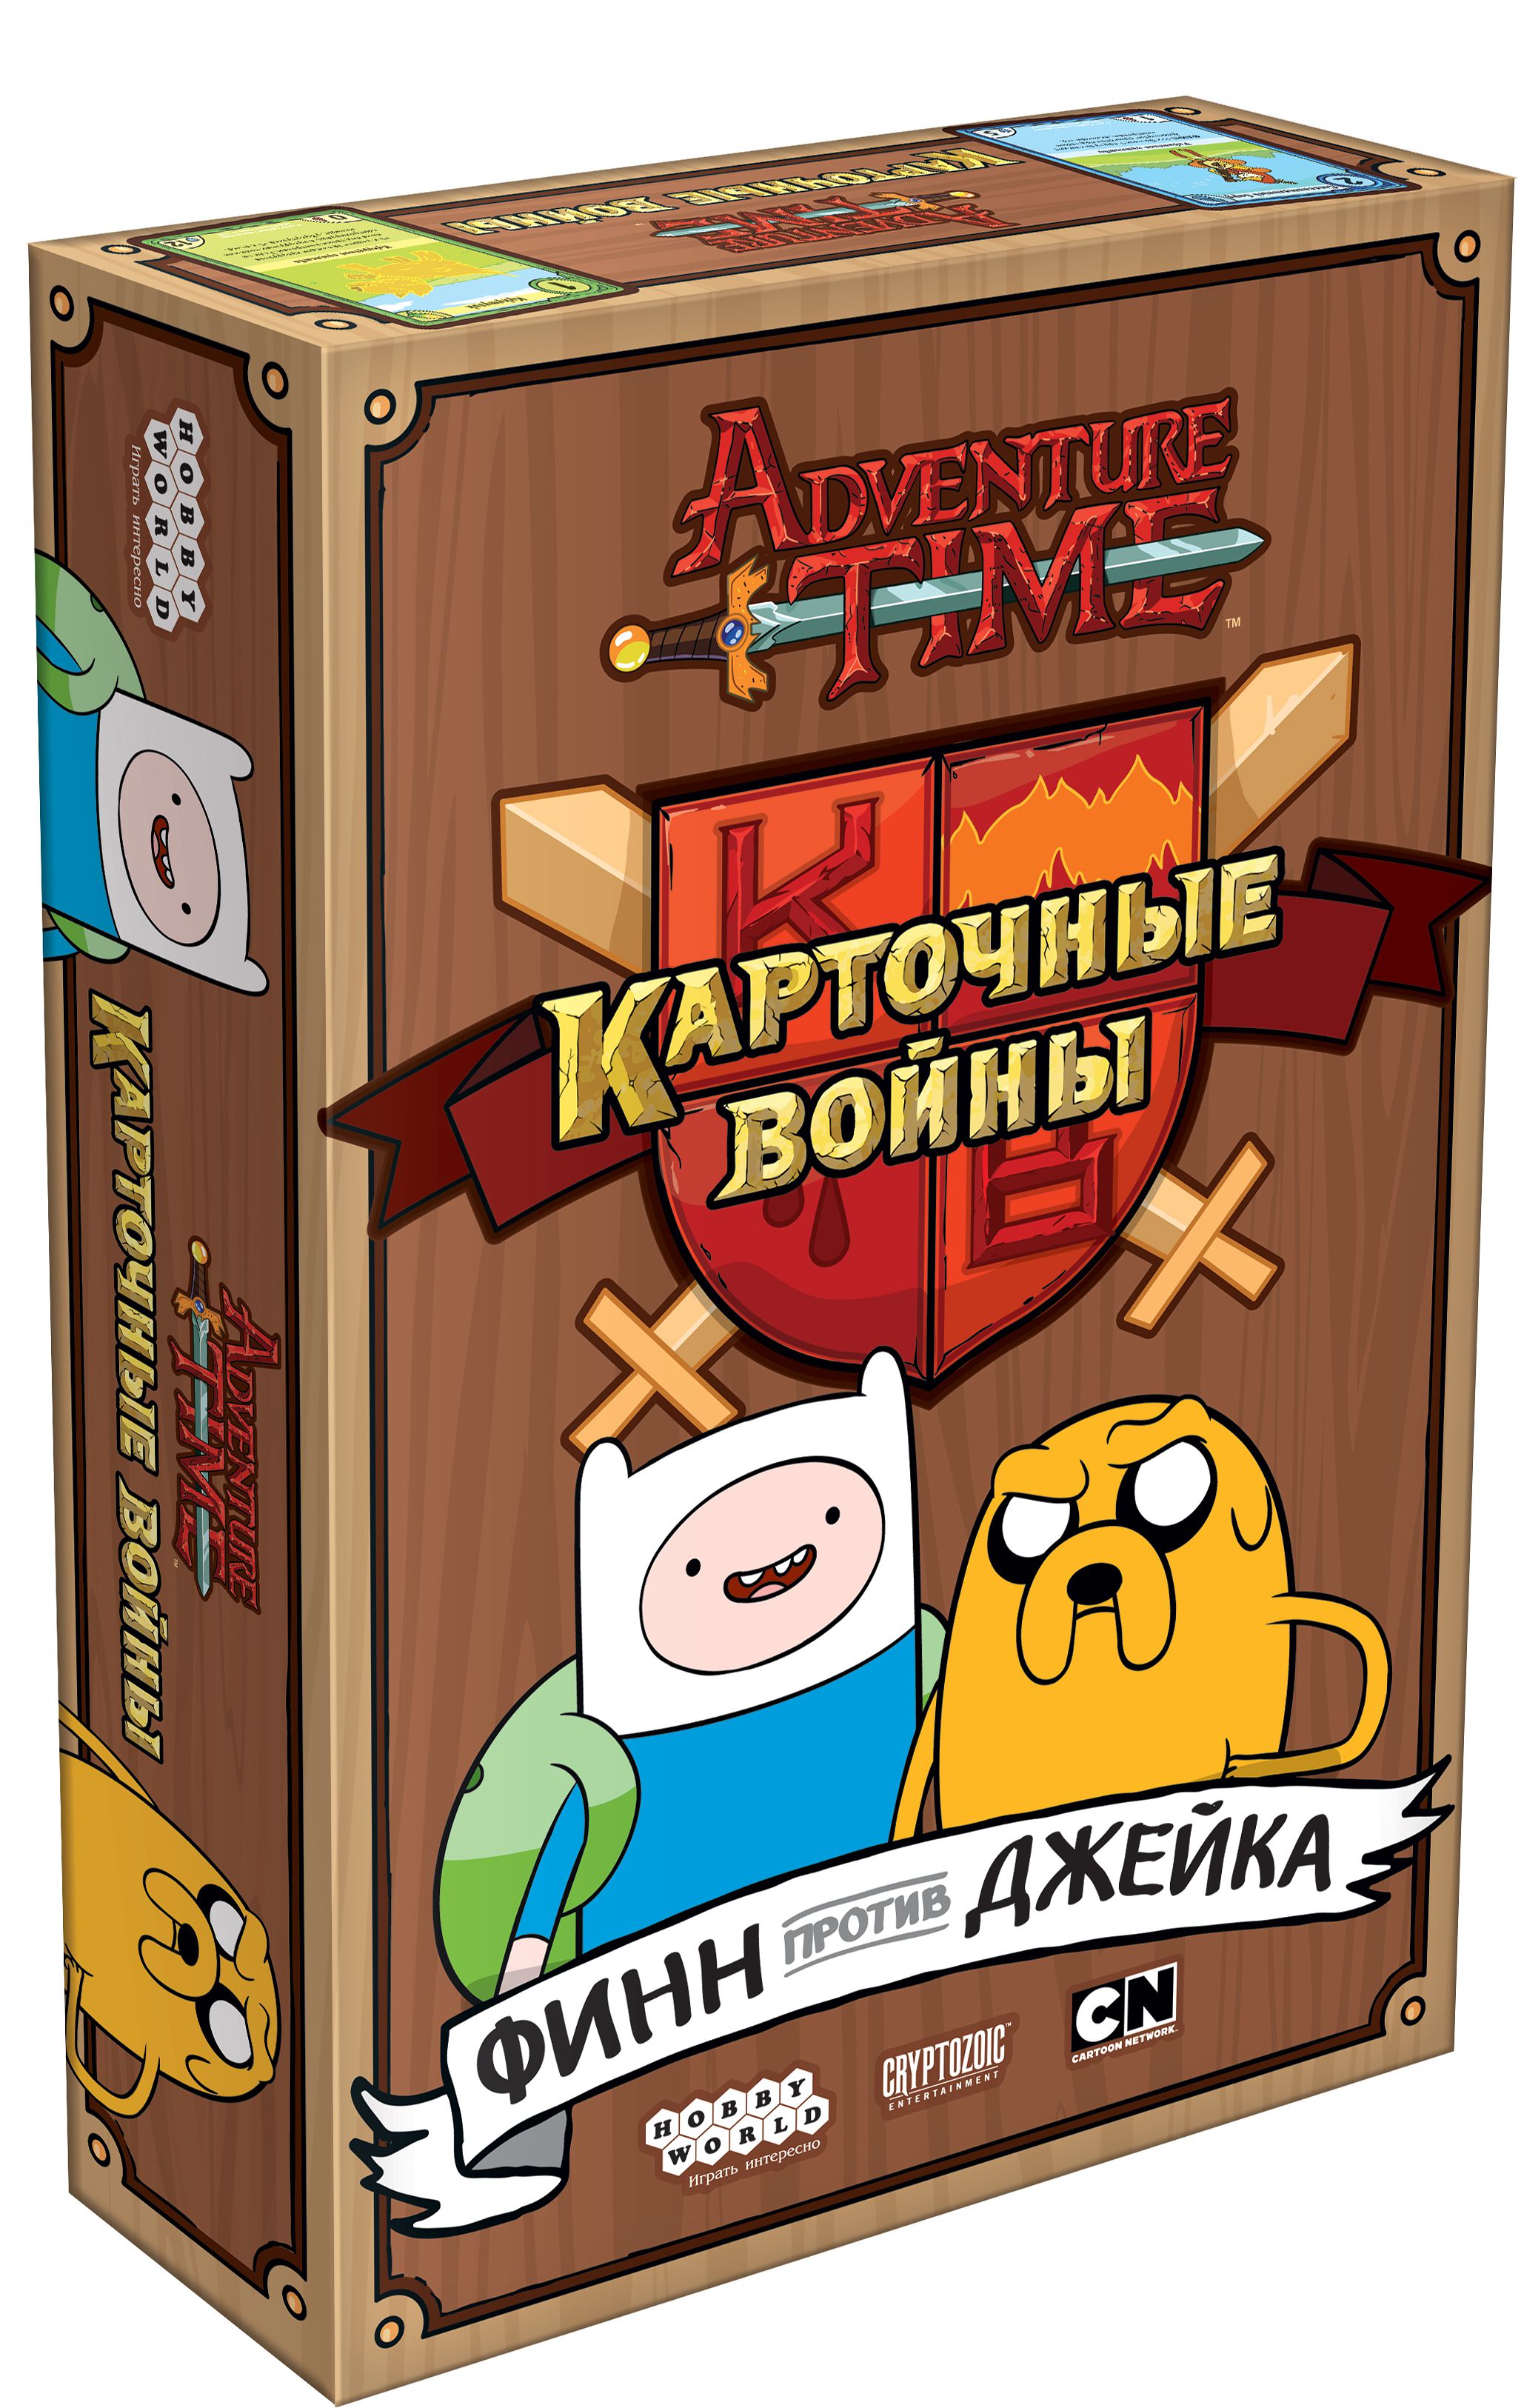 Настольная игра Adventure Time. Карточные войны: Финн против Джейка от 1С Интерес